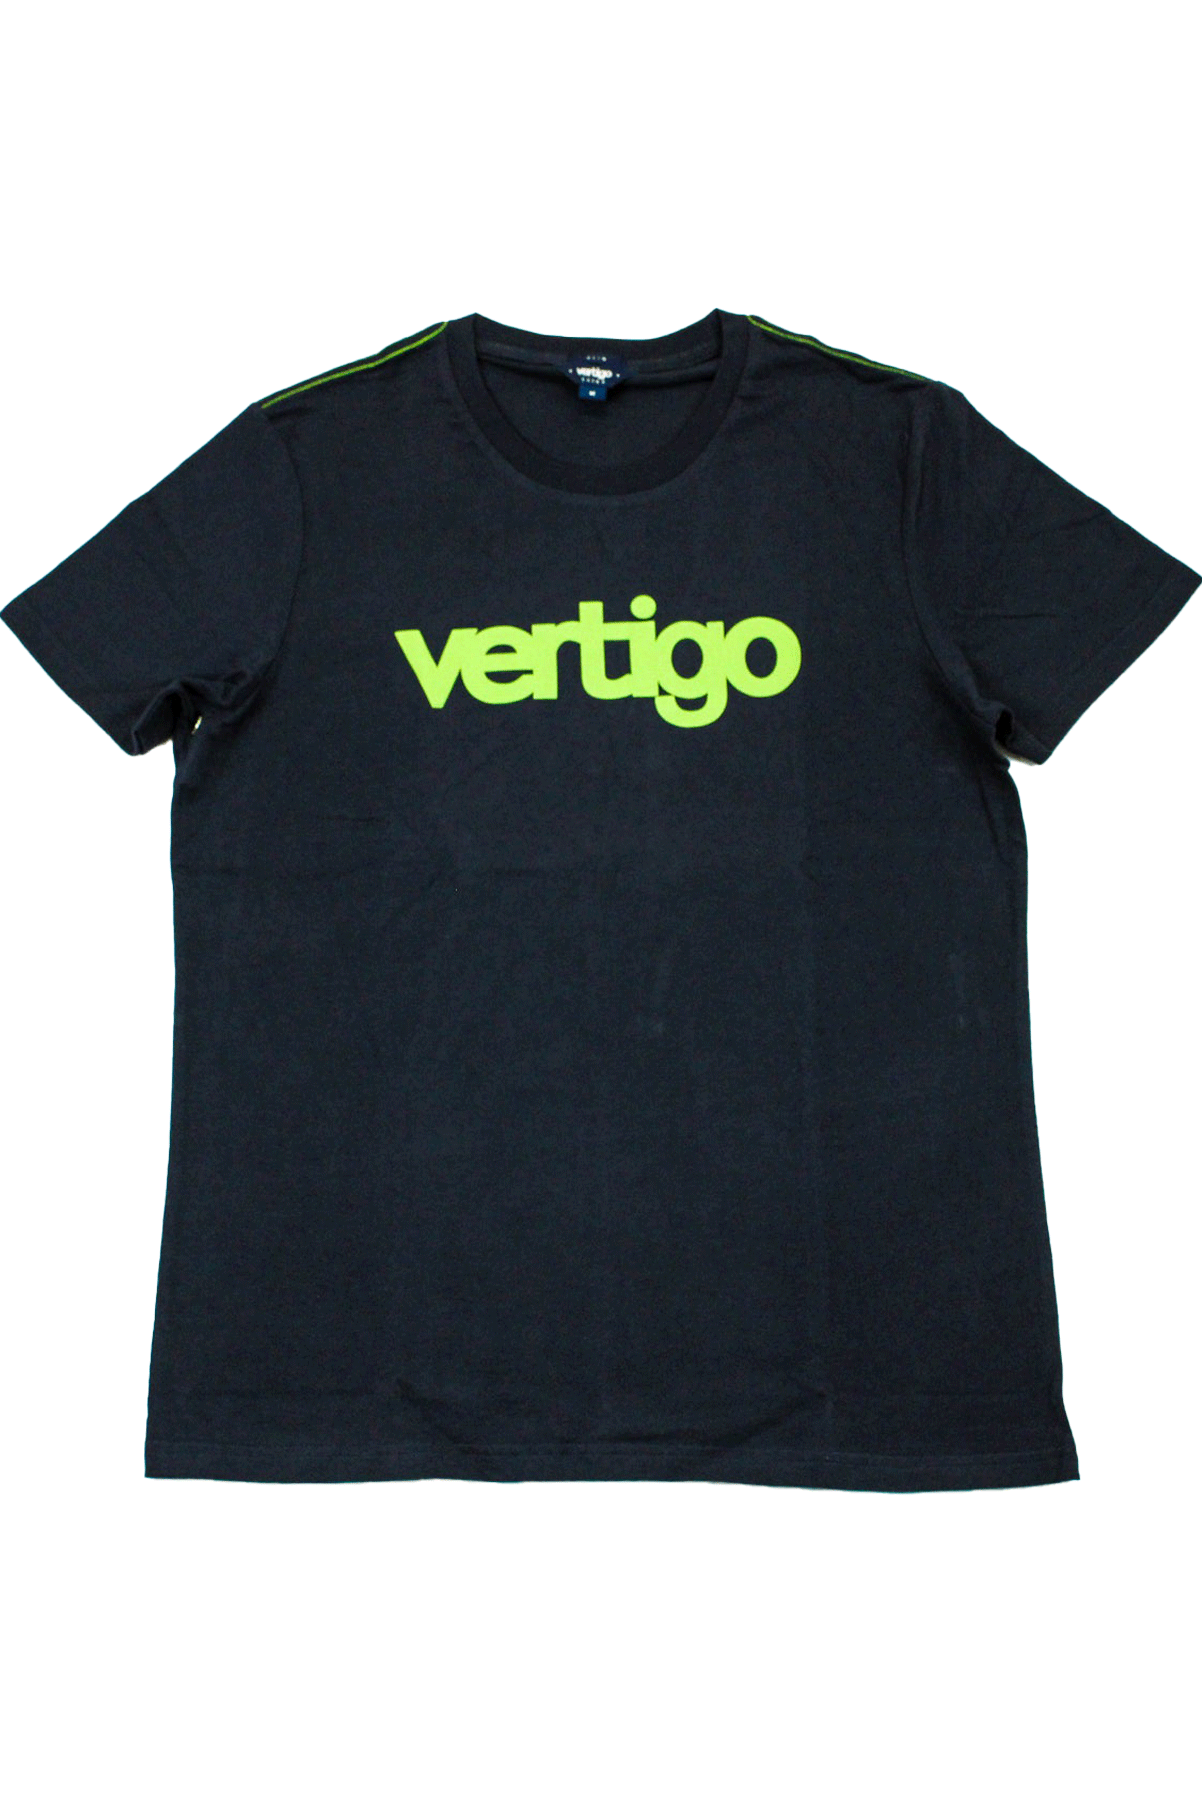 Vertigo Navy T-Shirt